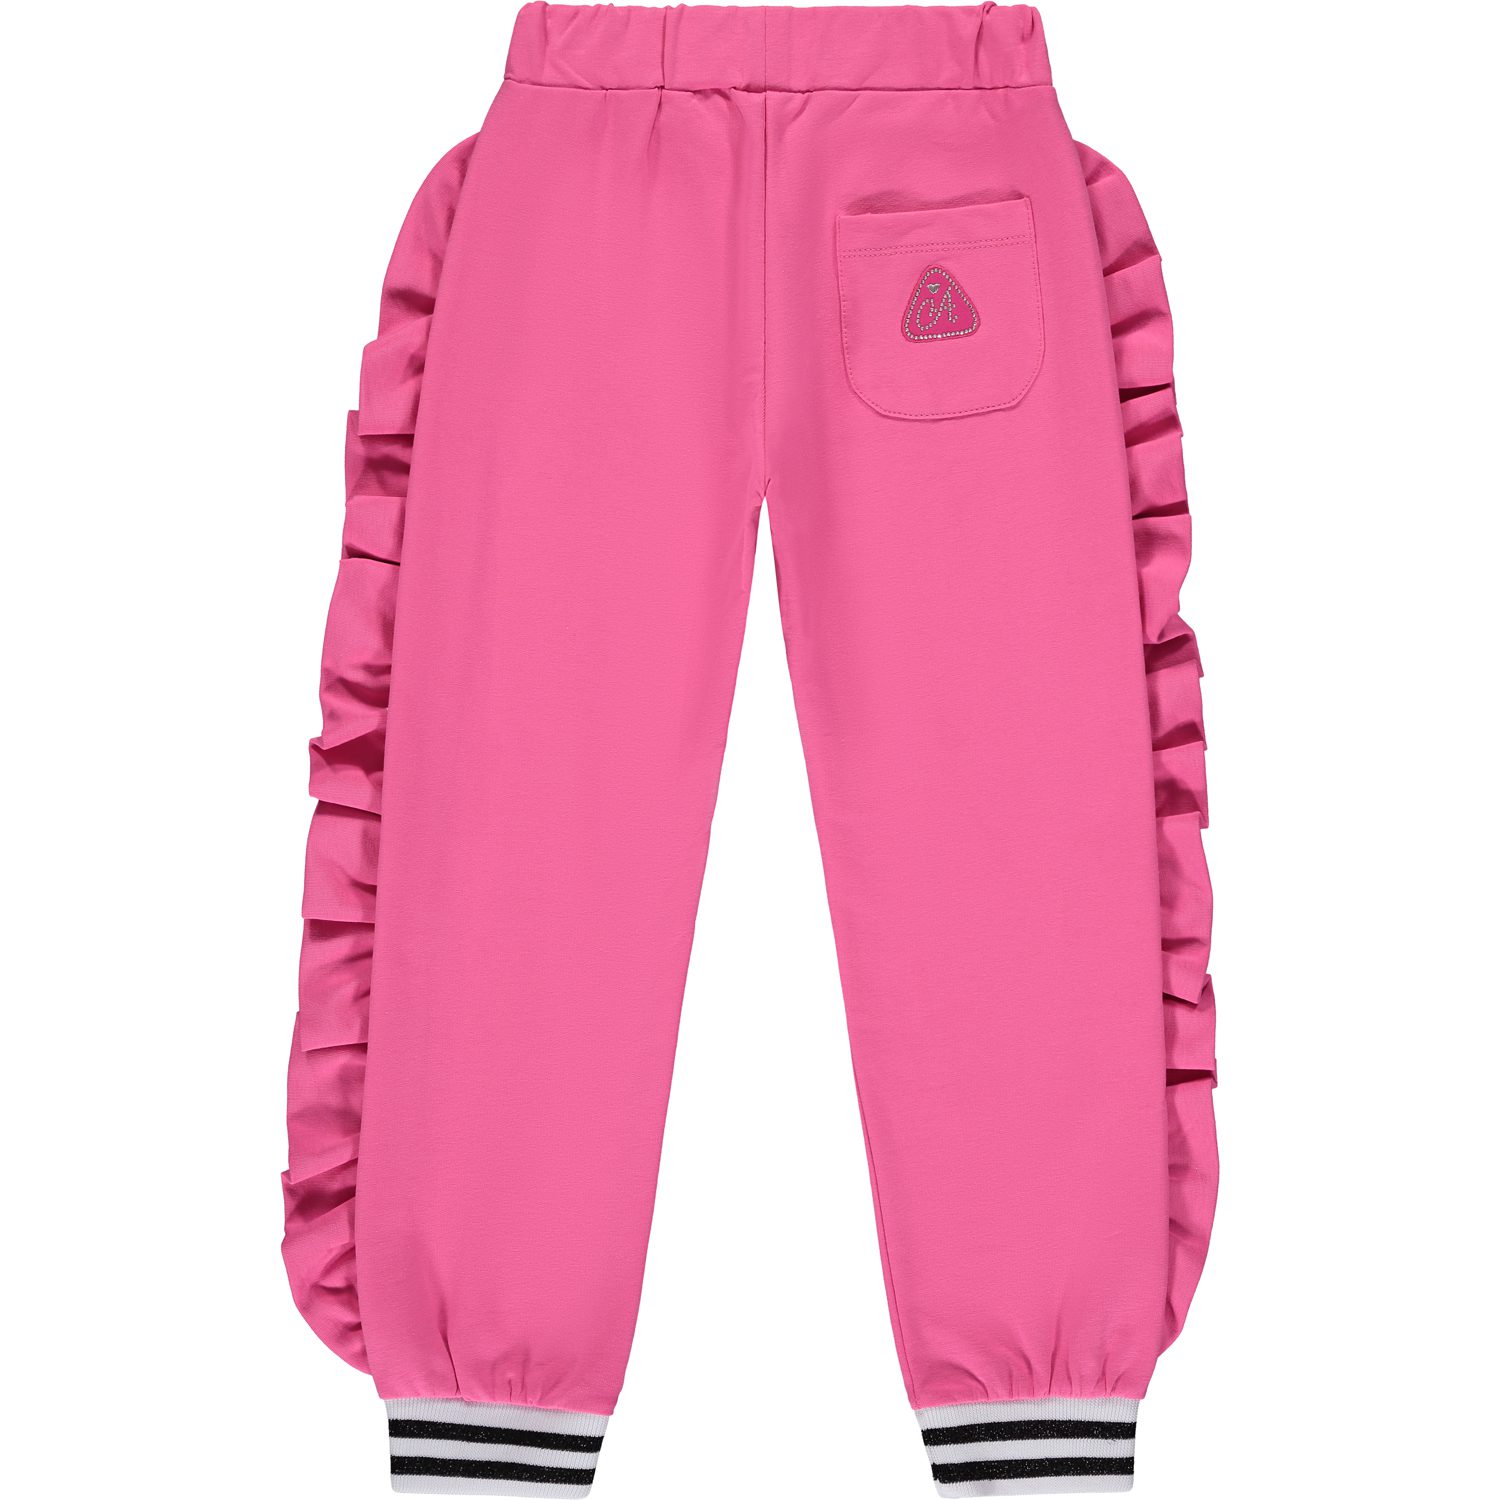 A’dee Wanda roze joggingspak broek achterkant